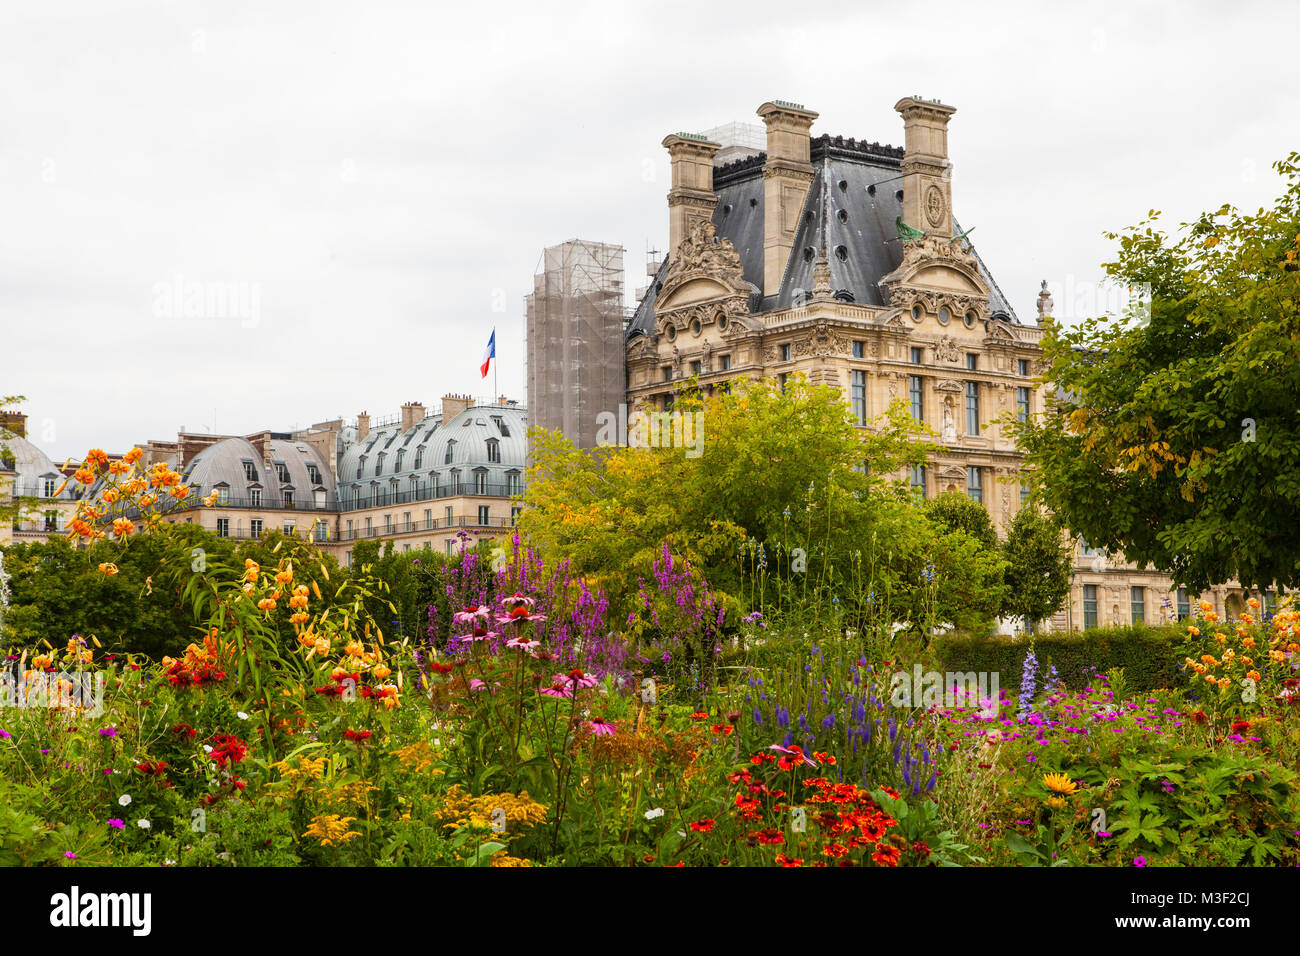 PARIS - 15. Juli 2014: Berühmte Tuilerien-Garten (Jardin des Tuileries). Schönsten und beliebtesten Grünanlage befindet sich zwischen dem Louvre Museum und die P Stockfoto